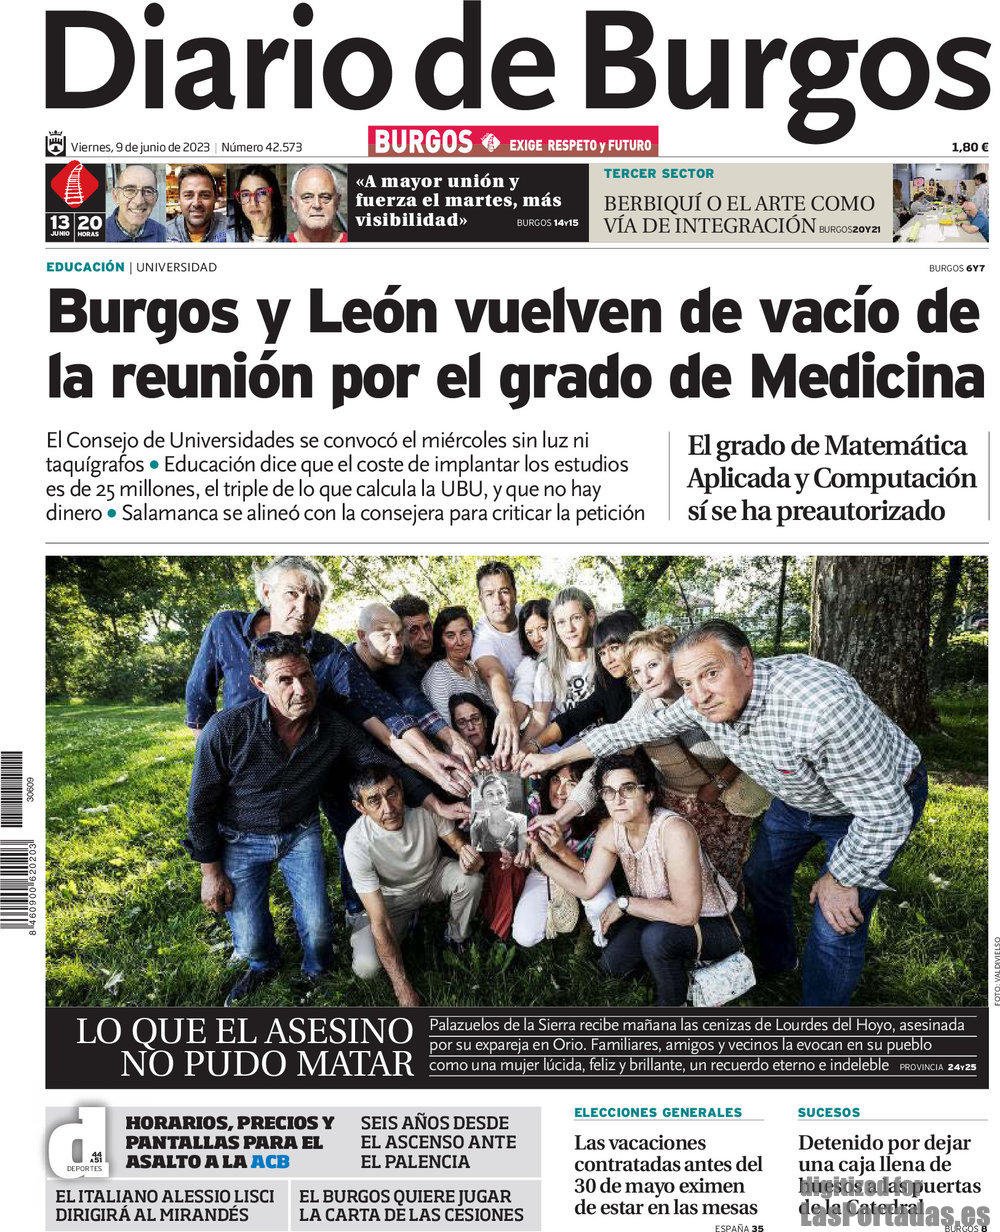 Diario de Burgos